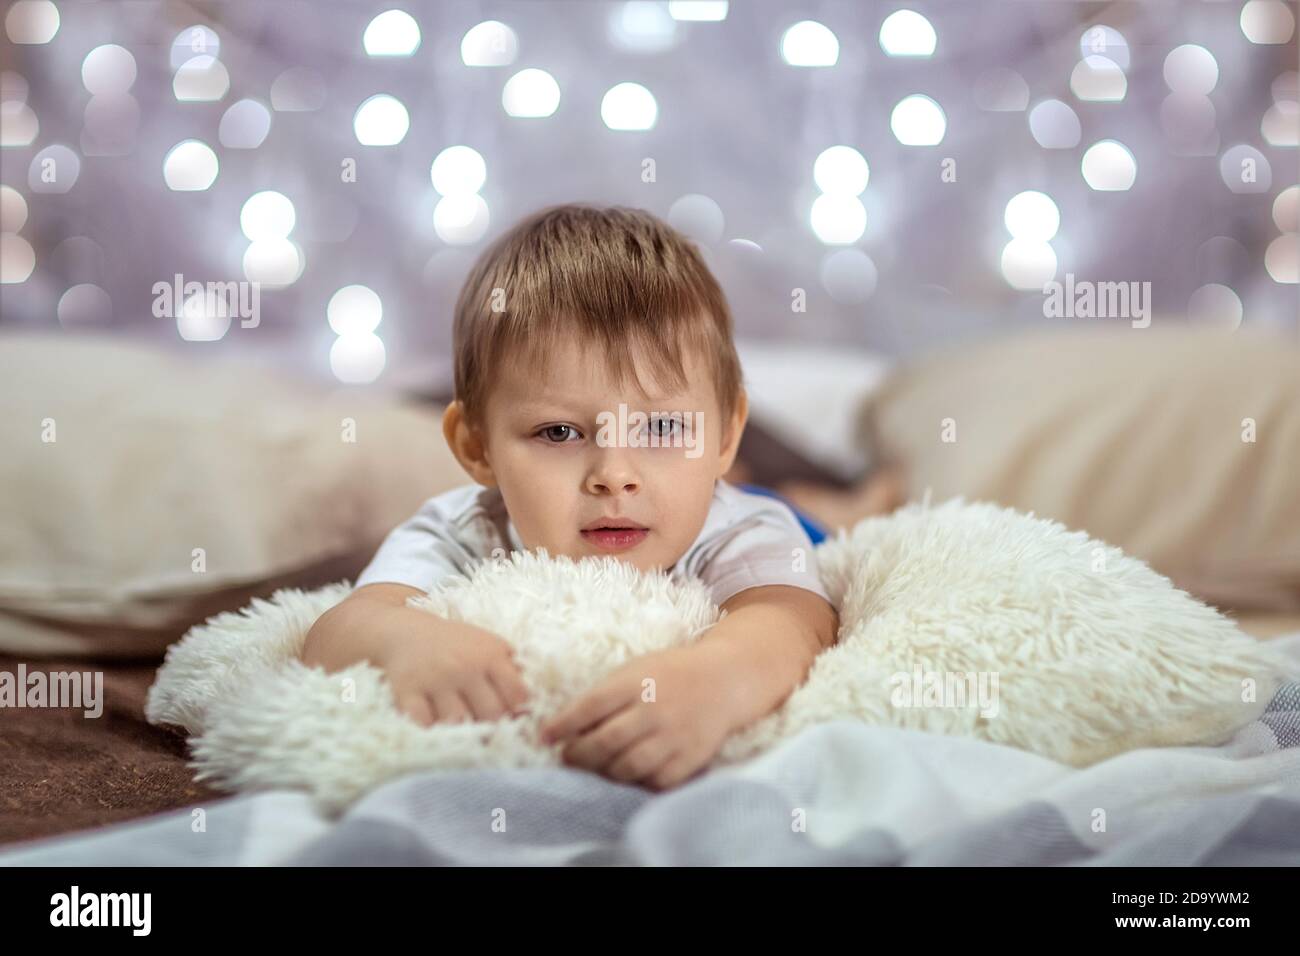 Un beau garçon de 4-5 ans est allongé sur un lit sur un fond de guirlandes étincelantes. Ambiance chaleureuse des vacances de Noël. Le concept Banque D'Images